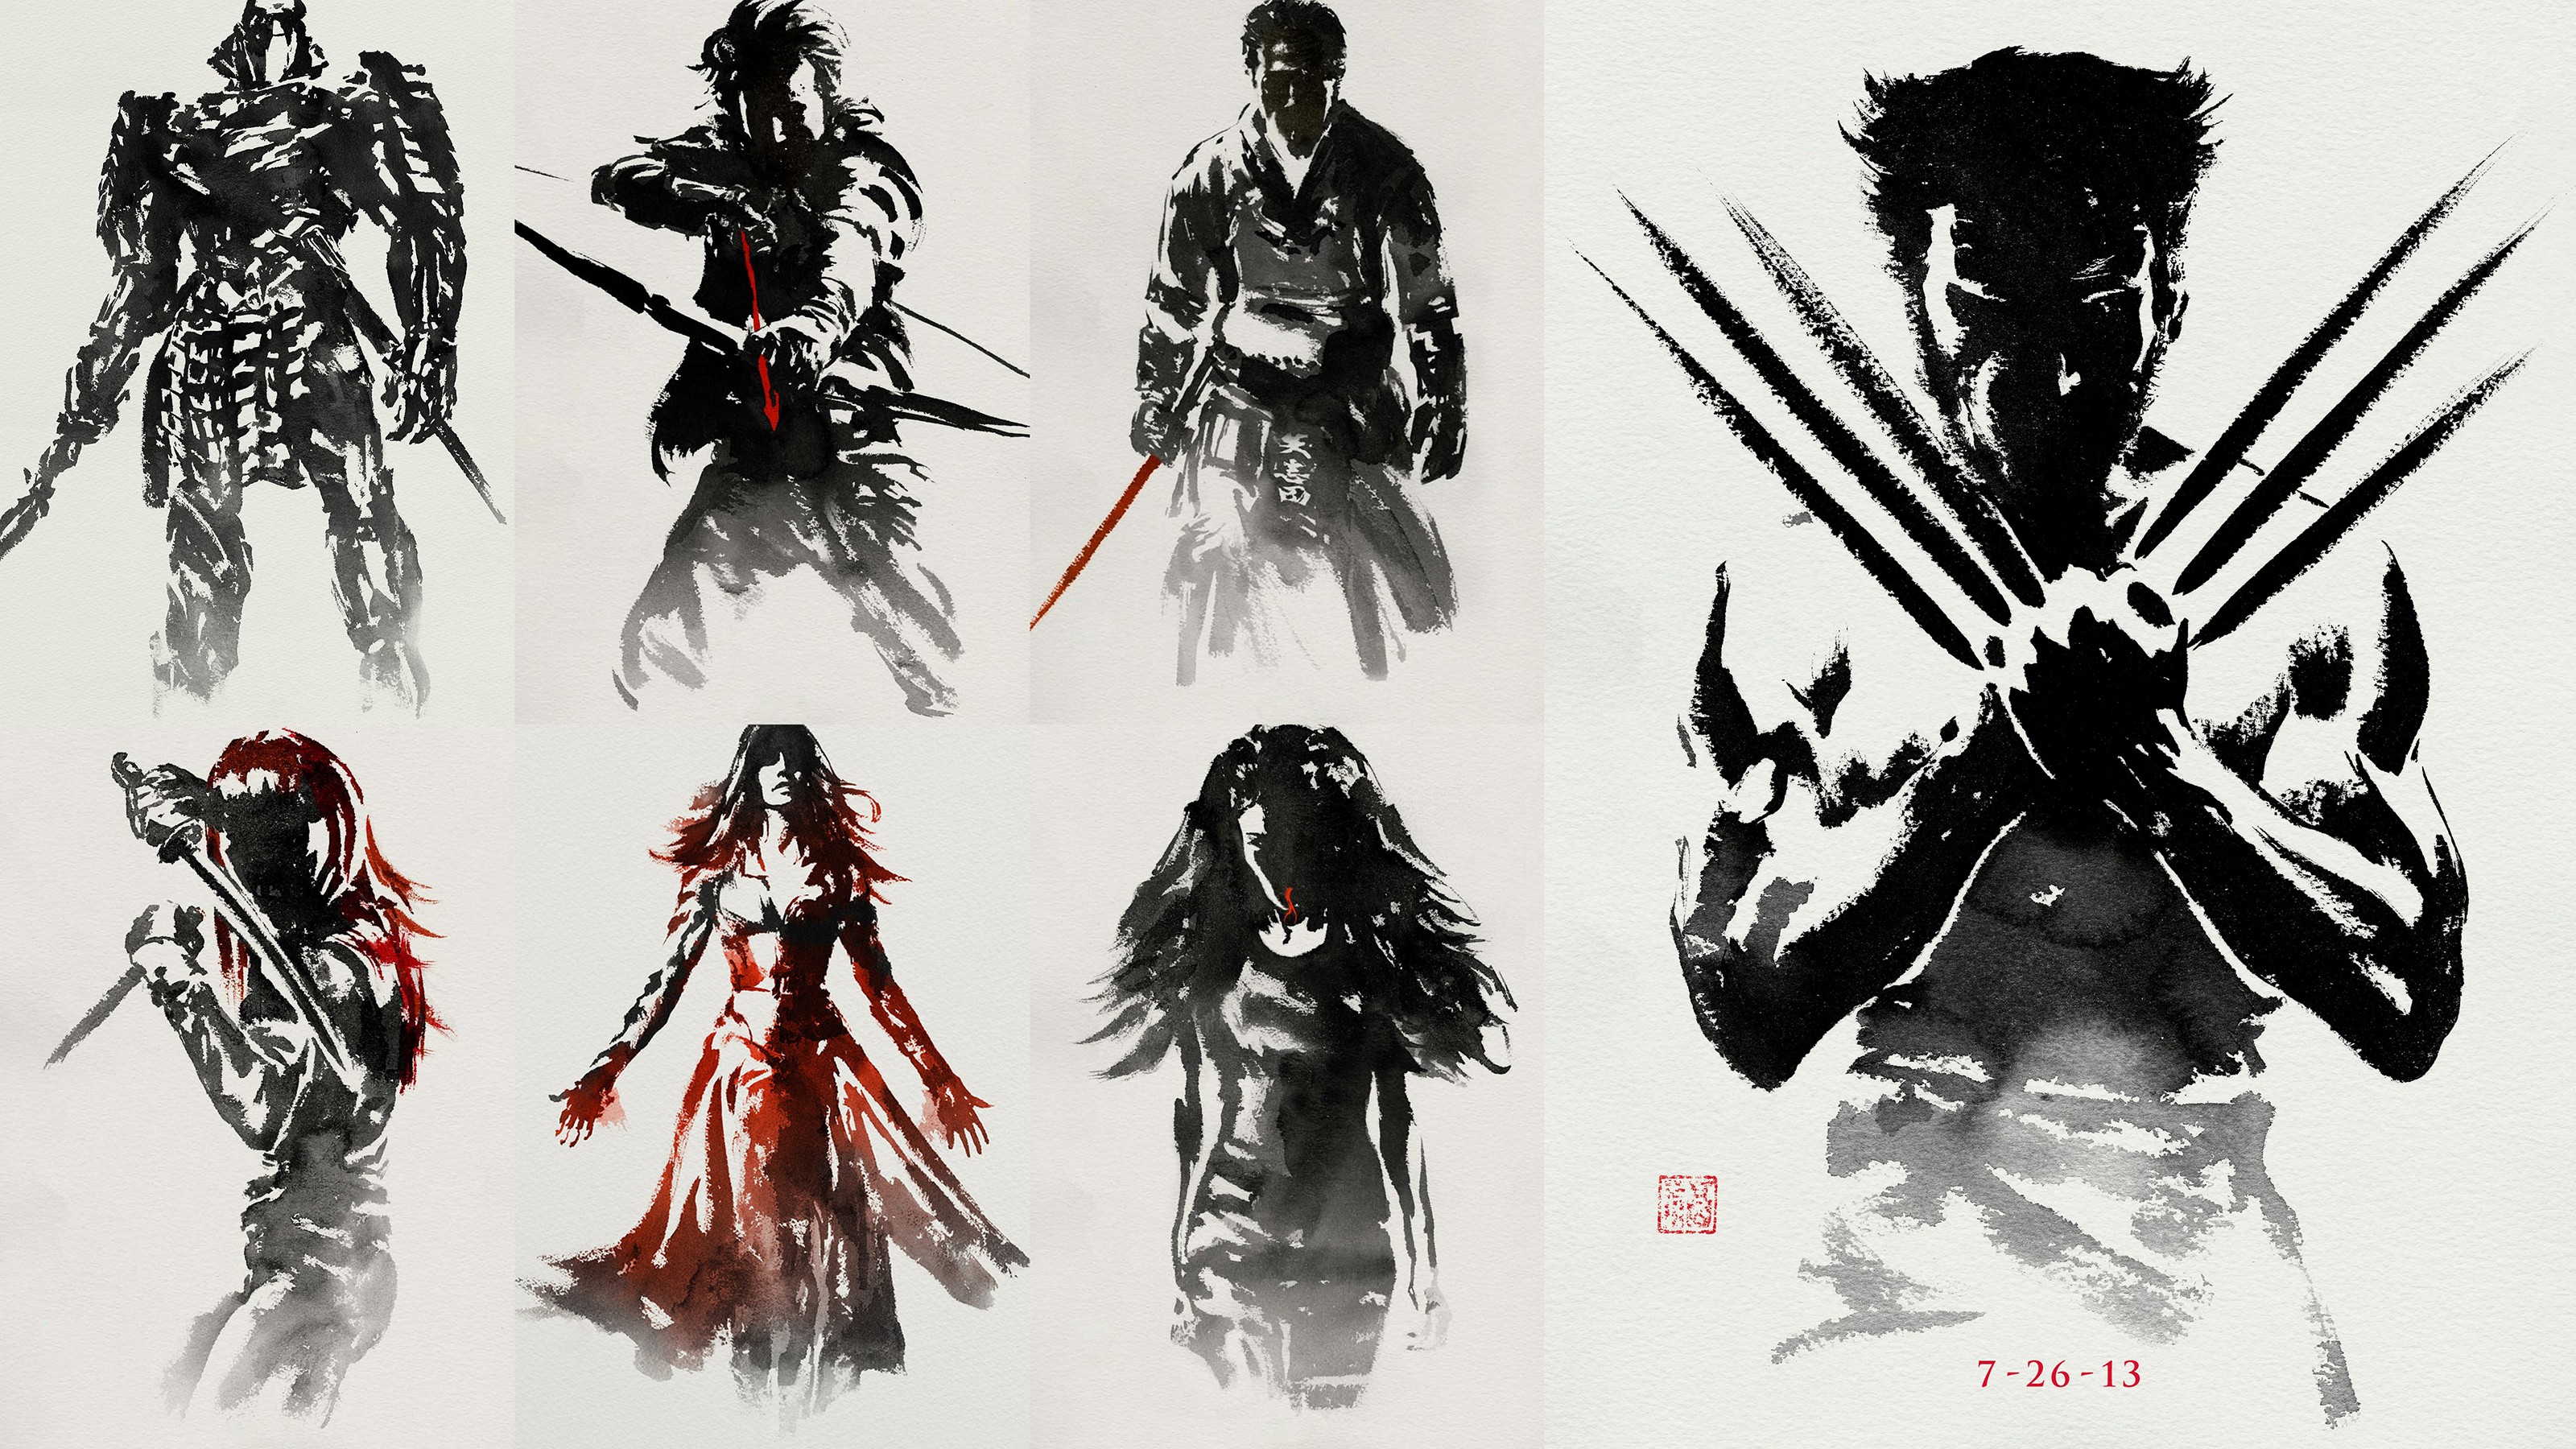 General 3200x1800 Wolverine collage 2013 (Year) warrior artwork claws movies